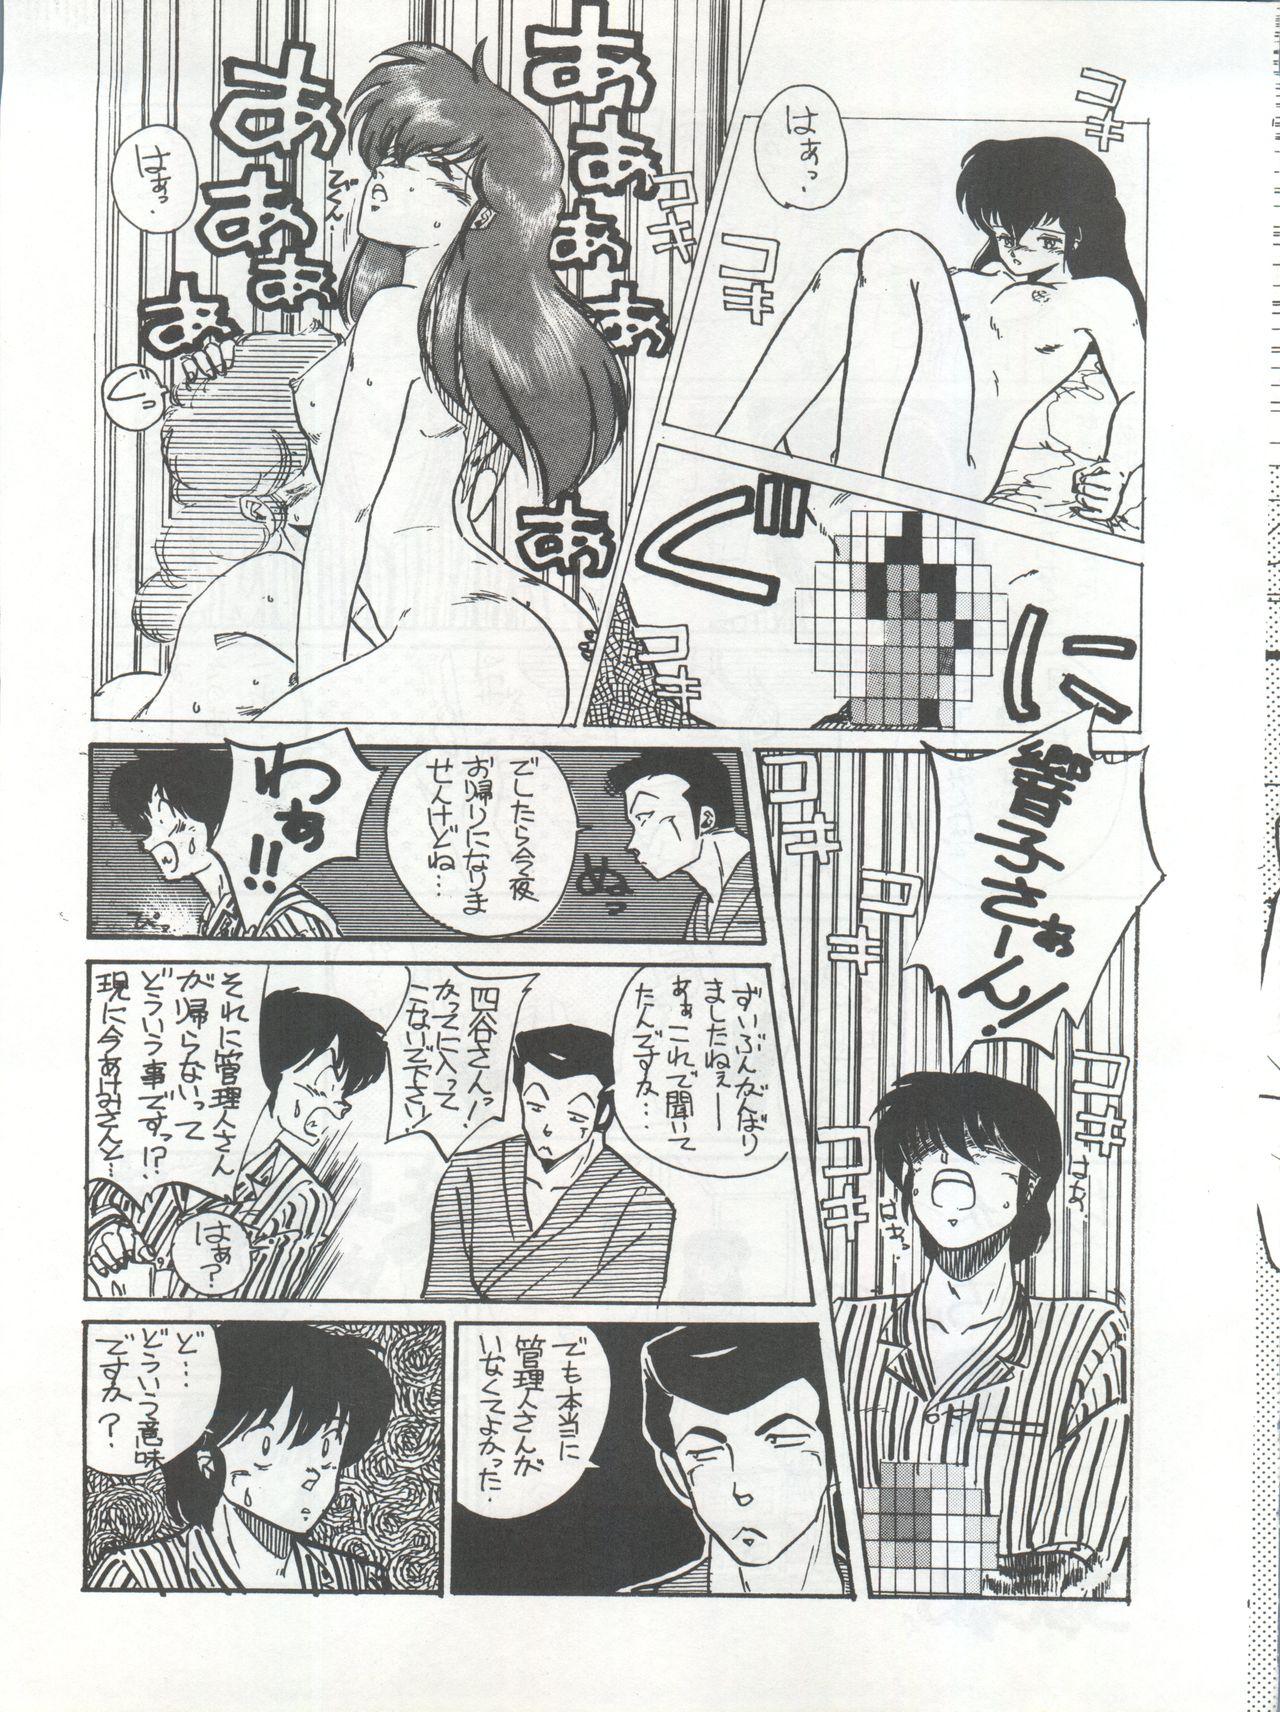 Bottom Ikkoku-kan 0 Gou Shitsu Part III - Maison ikkoku Smoking - Page 11